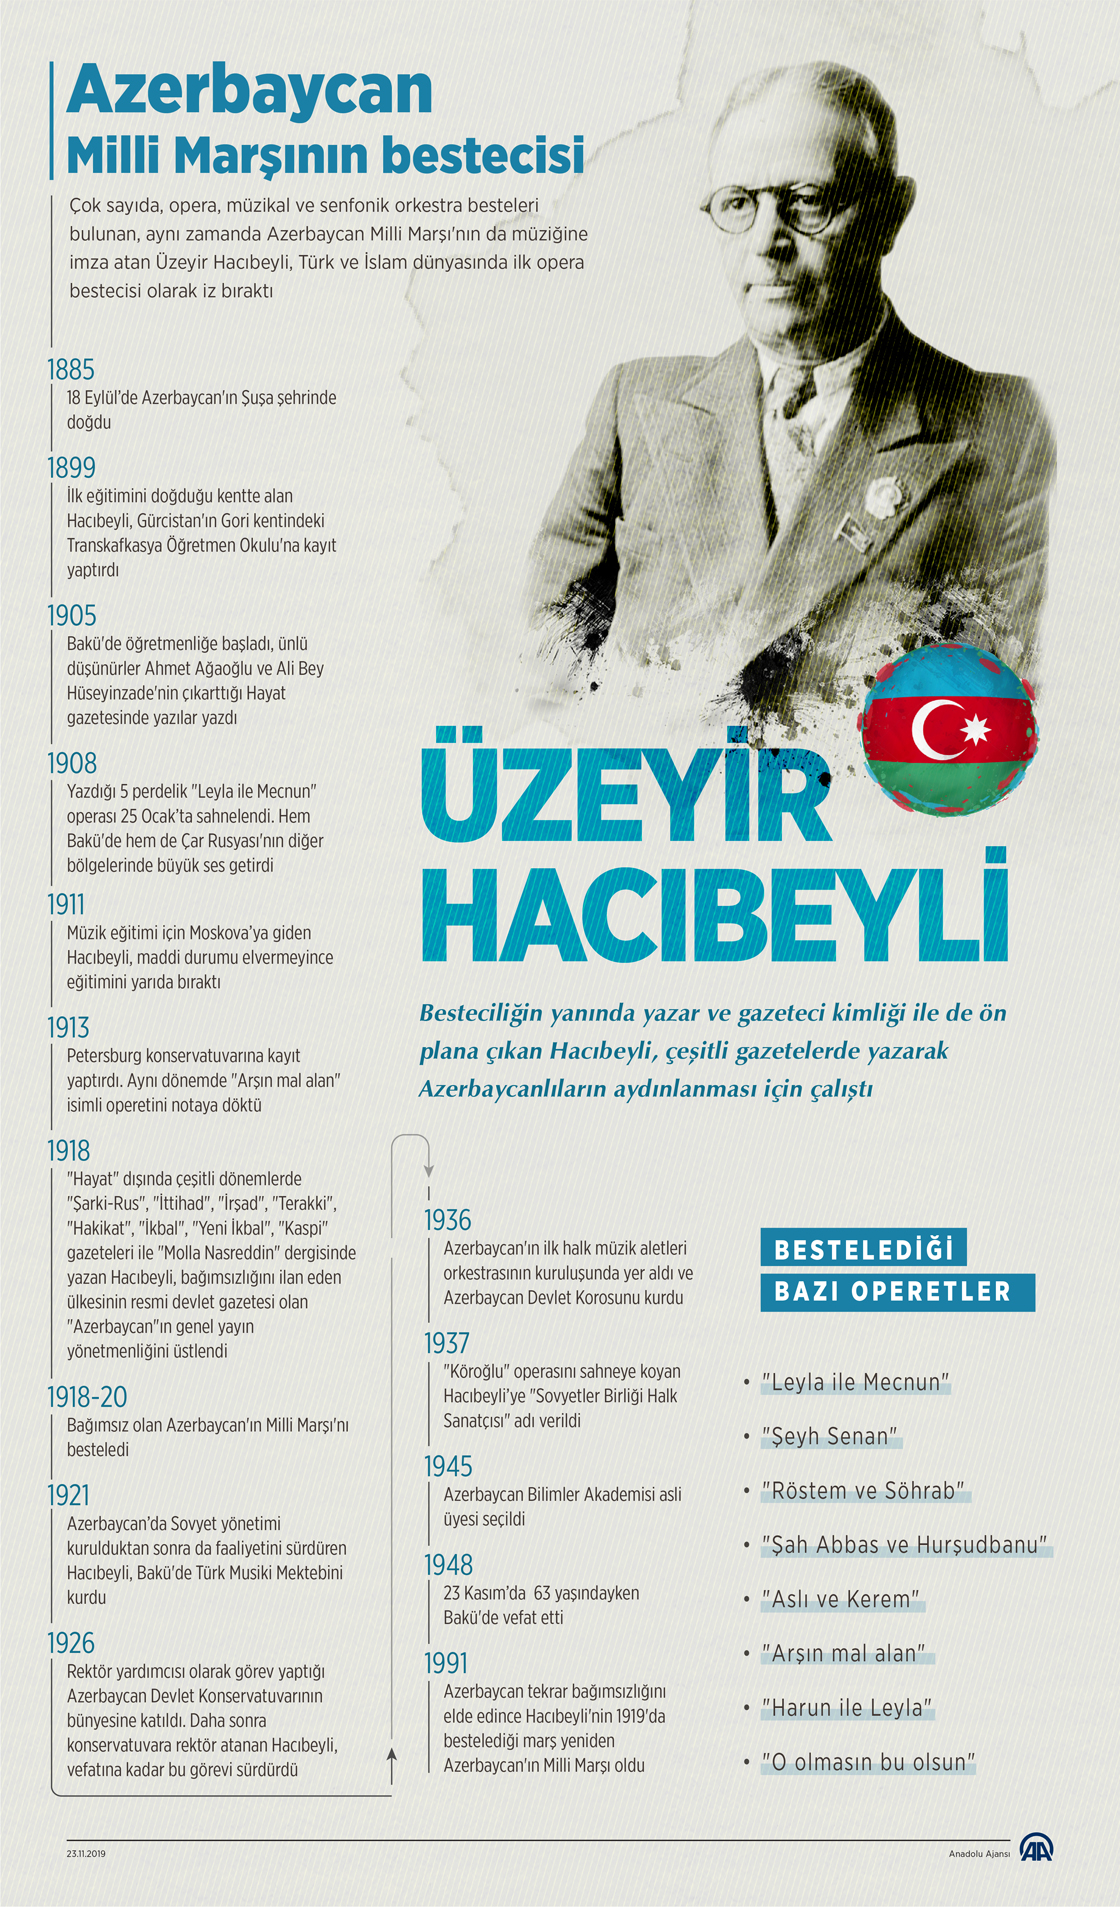 Azerbaycan Milli Marşı'nın bestecisi Üzeyir Hacıbeyli